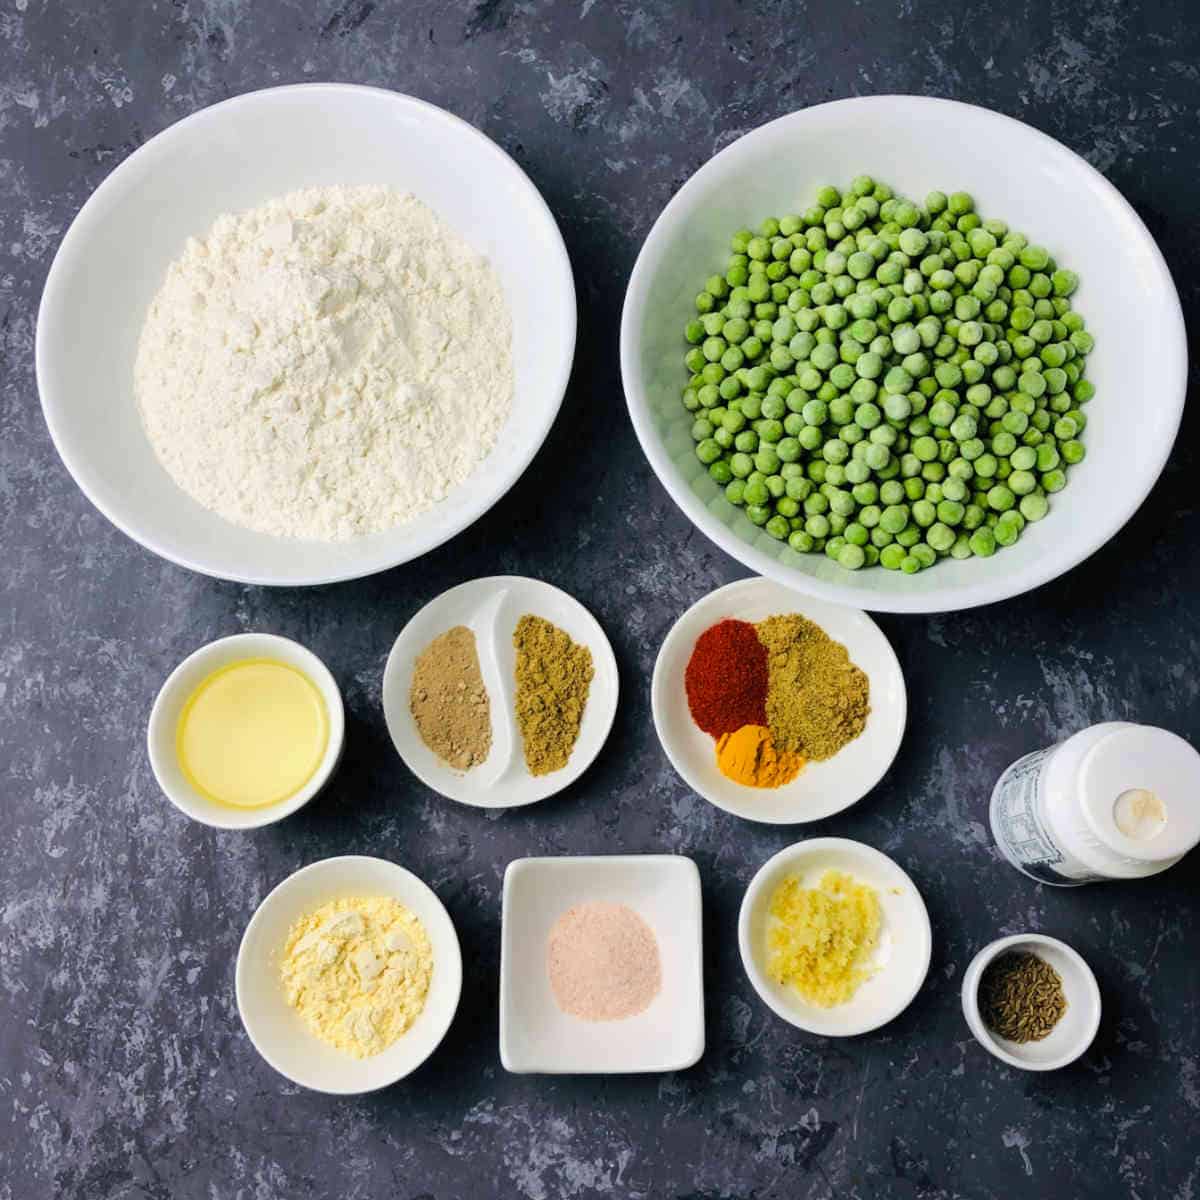 Ingredients to make peas paratha.